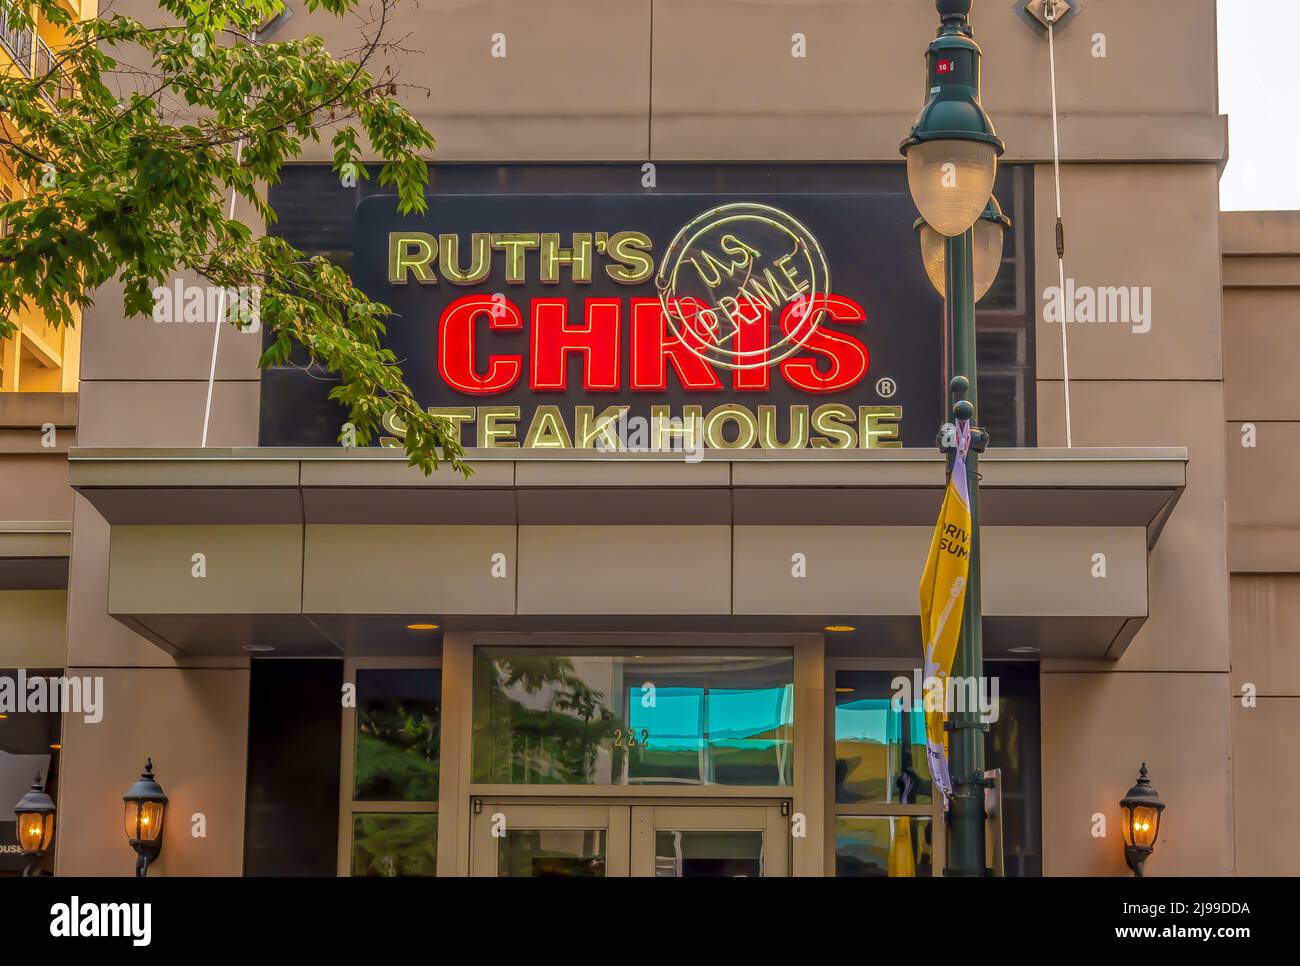 Charlotte, NC/USA - 26 maggio 2019: Vista esterna della facciata della Ruth's Chris Steak House che mostra il marchio in lettere rosse illuminate al neon e lettere bianche su nero Foto Stock